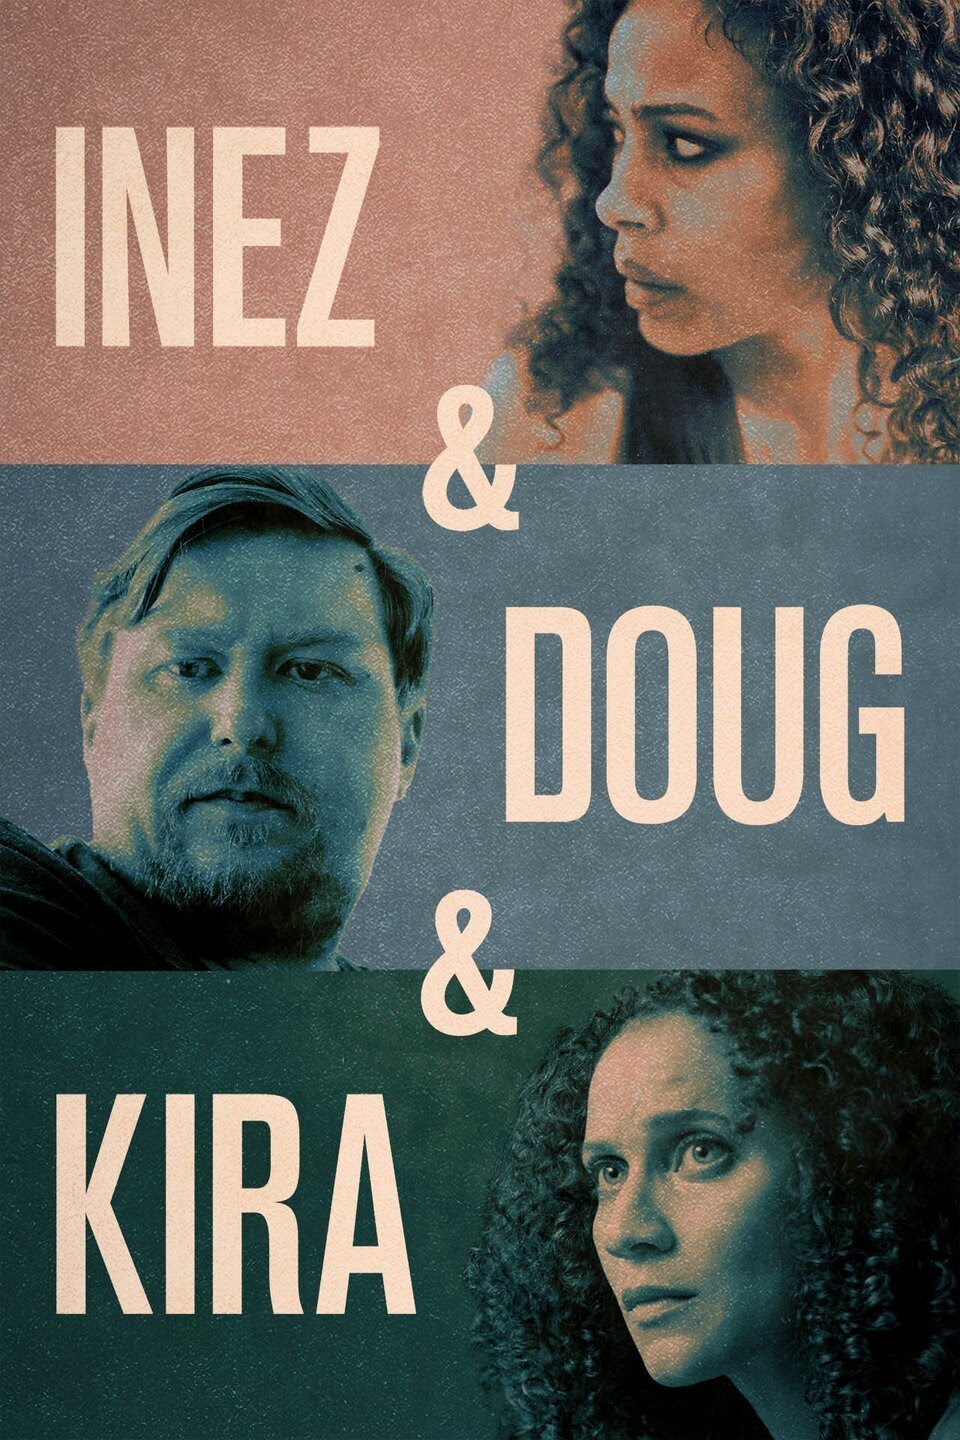 دانلود فیلم Inez & Doug & Kira